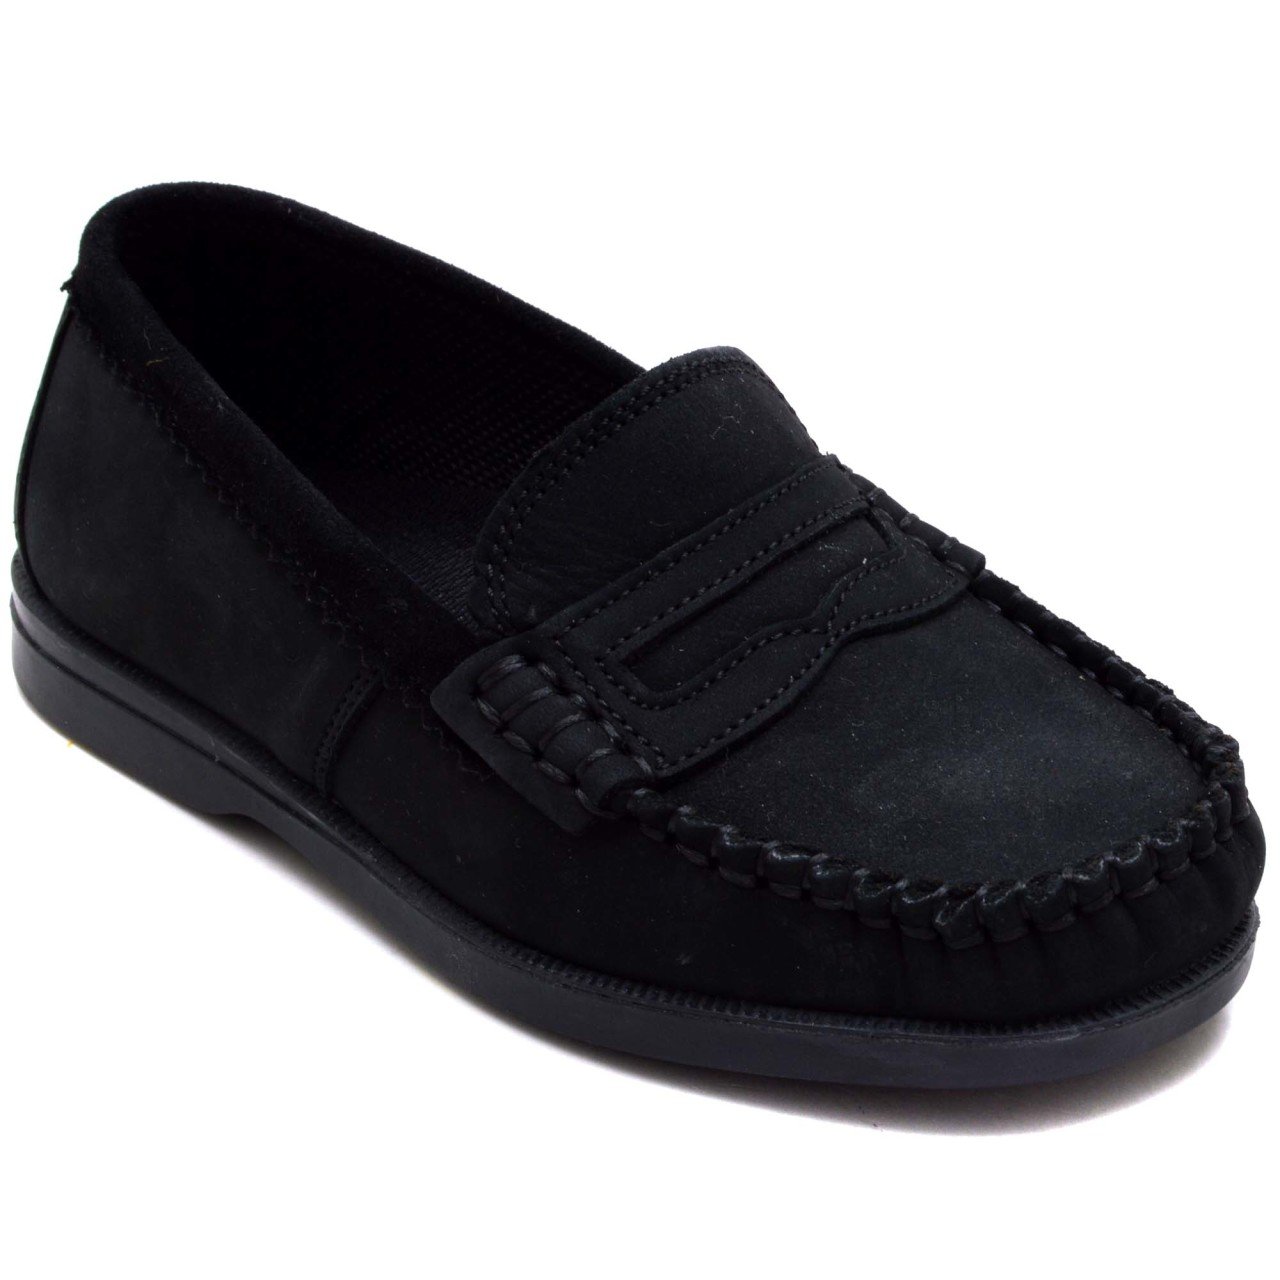 ALB 205 Patik Okul Ayakkabısı - Siyah (Deri)